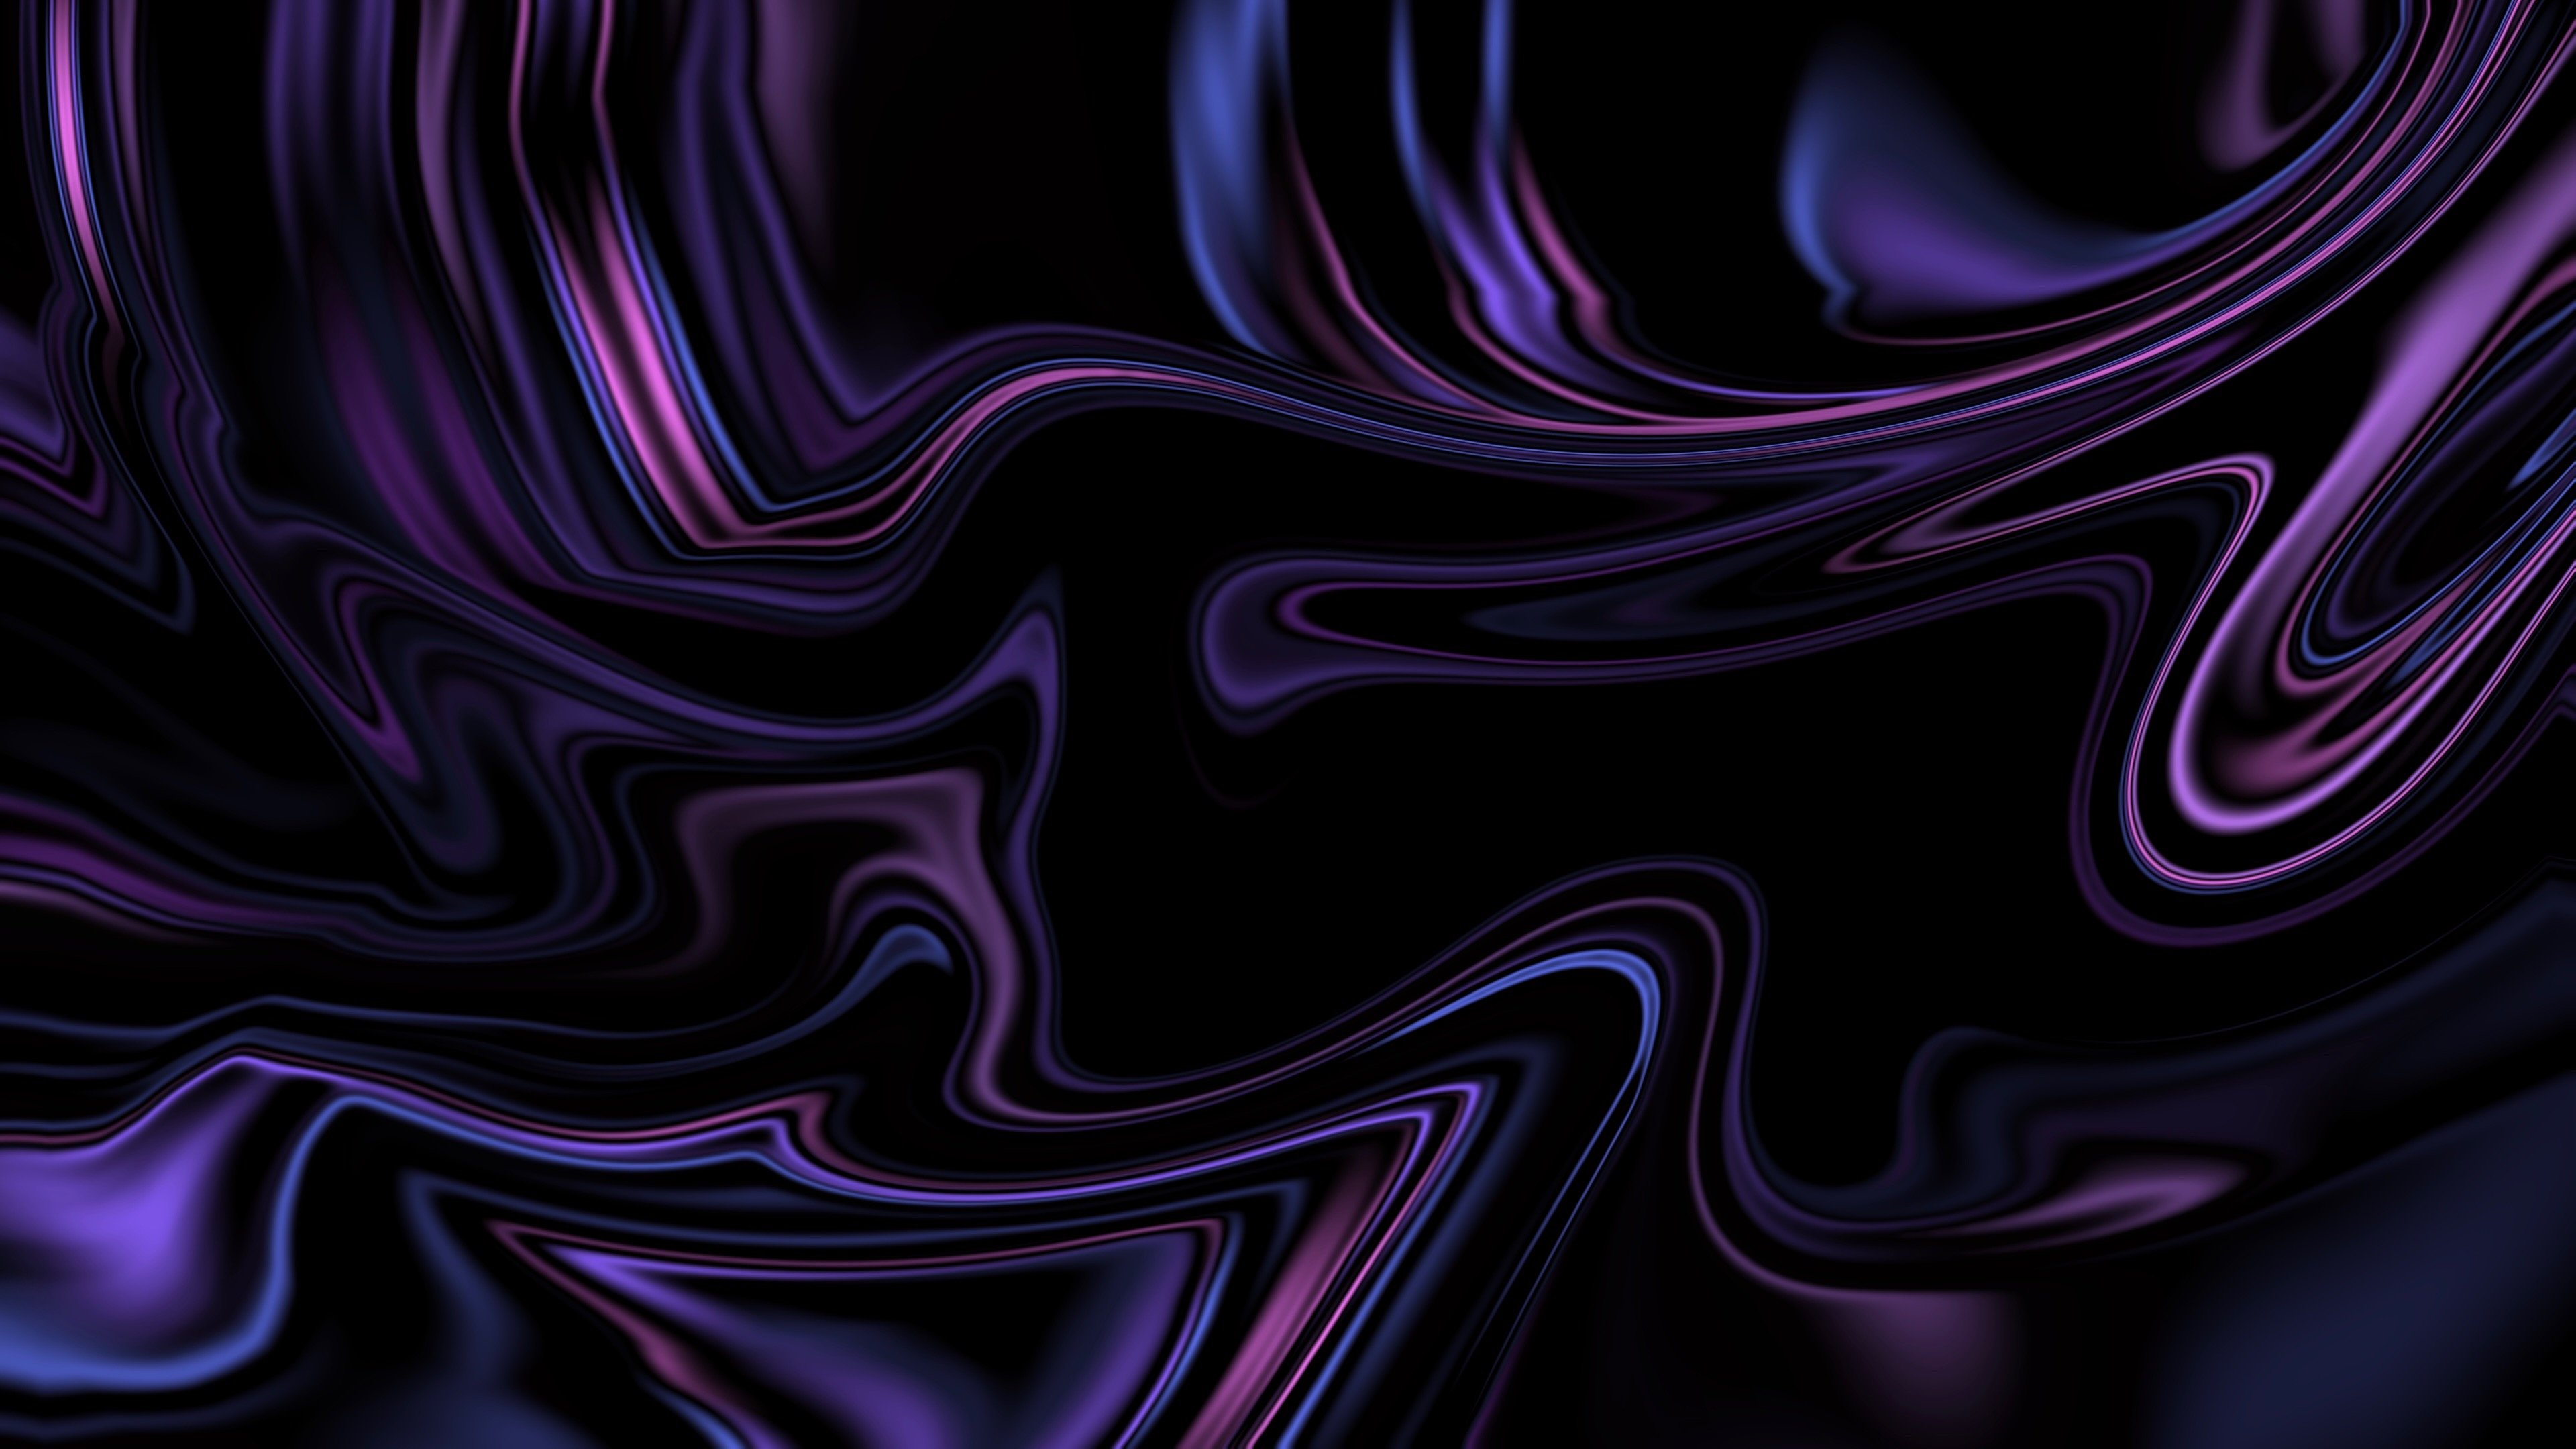 4k Desktop Purple Wallpapers - Wallpaper Cave